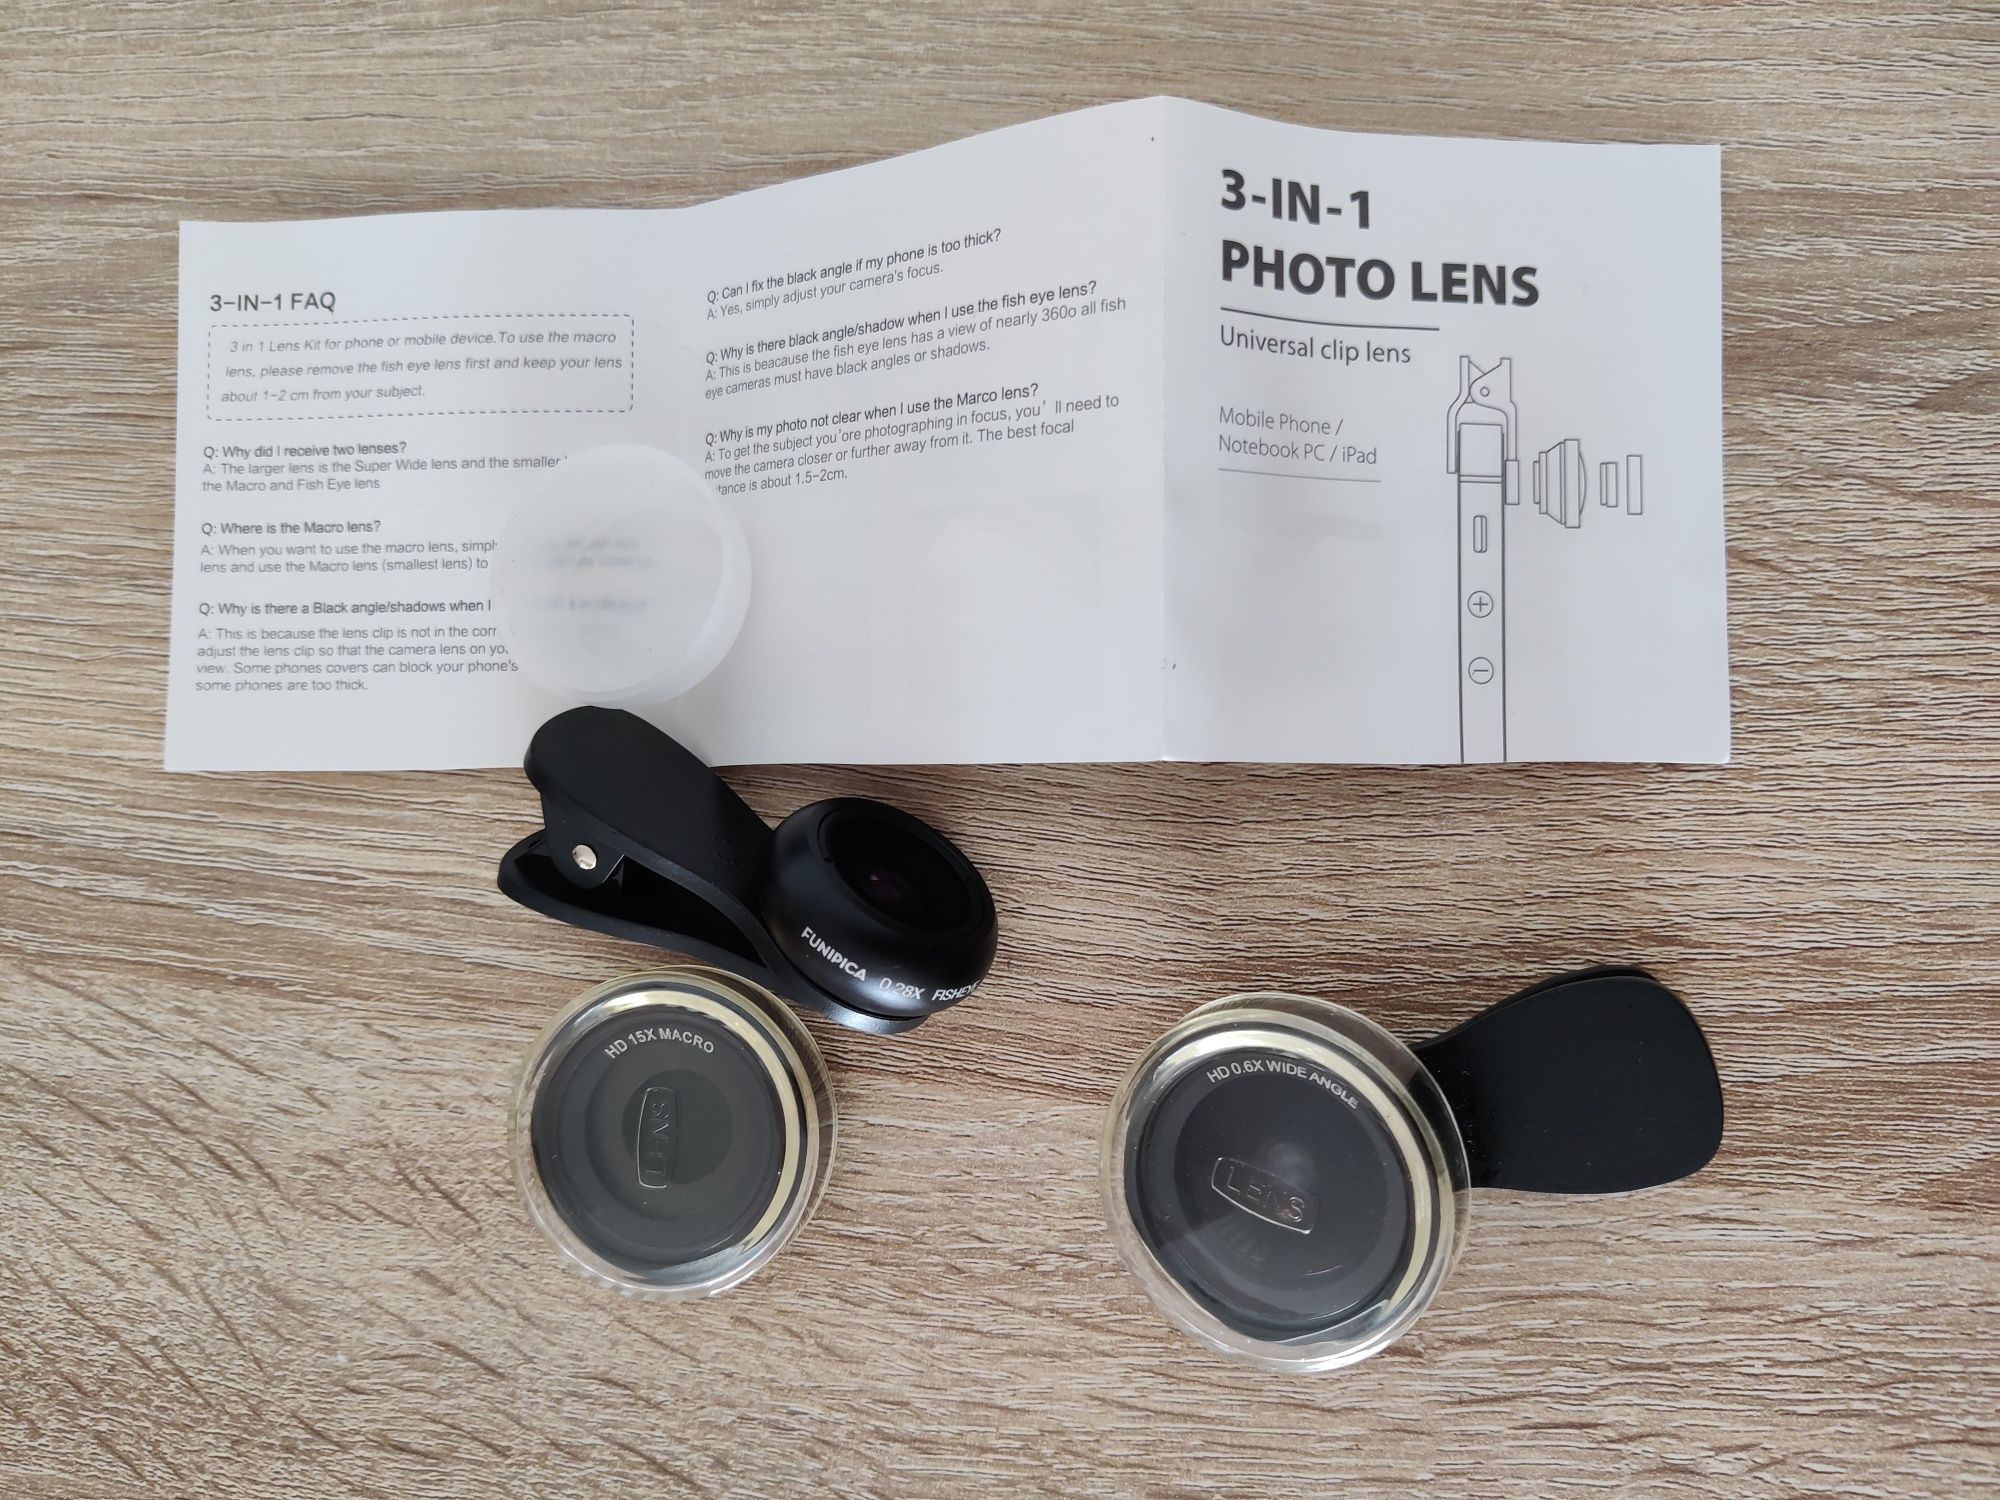 3-in-1 photo lens